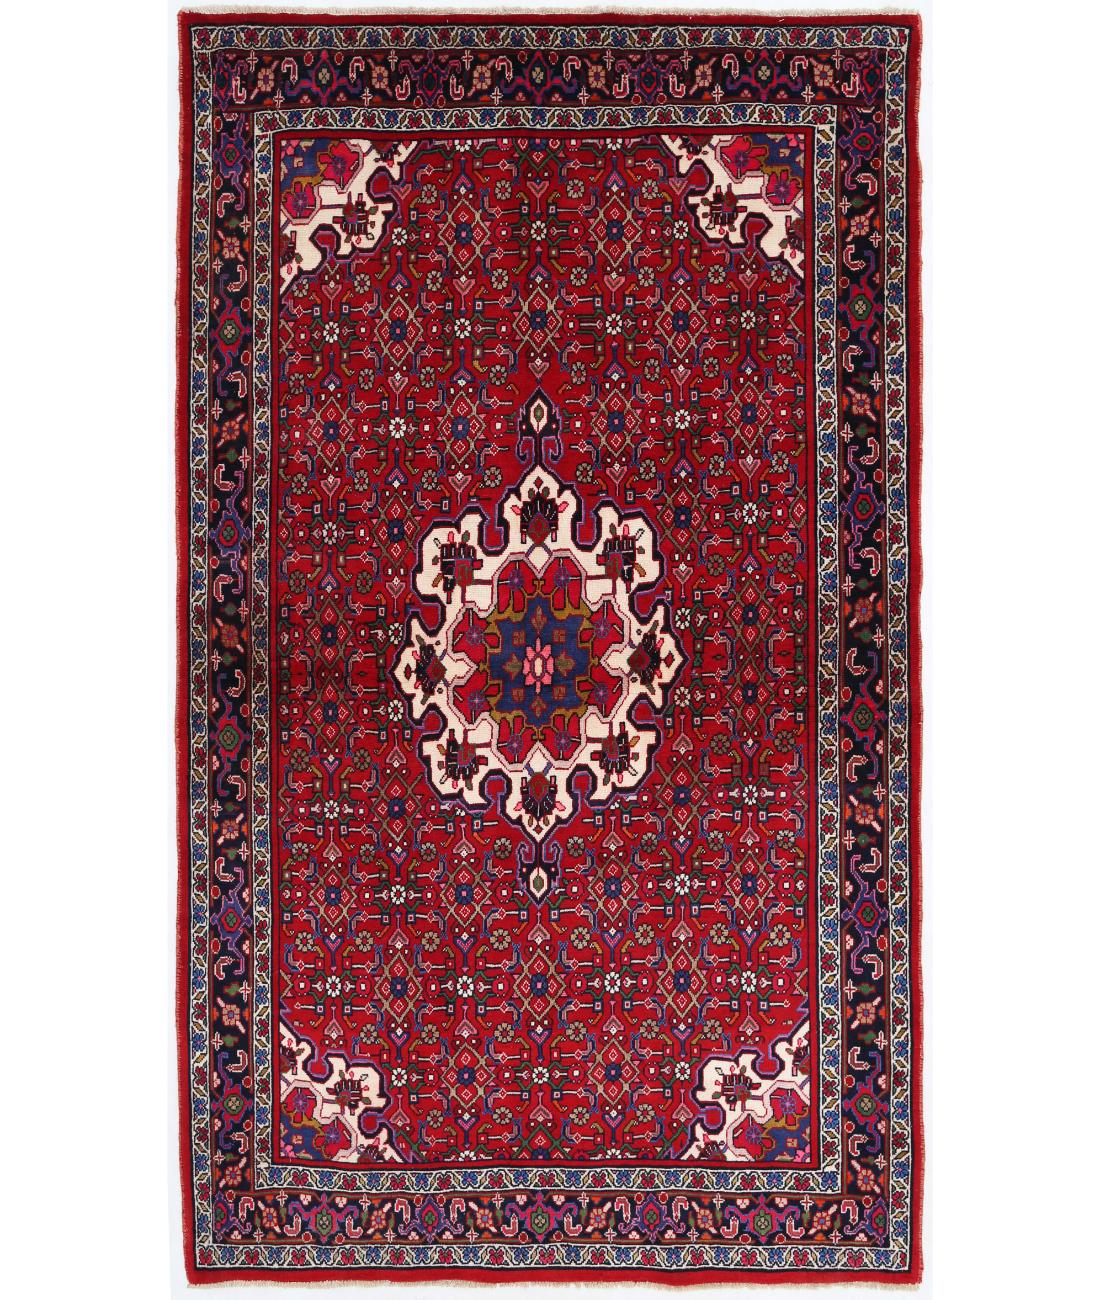 Hand Knotted Persian Bijar Wool Rug - 4'2'' x 7'3'' 4' 2" X 7' 3" ( 127 X 221 ) / Red / Black